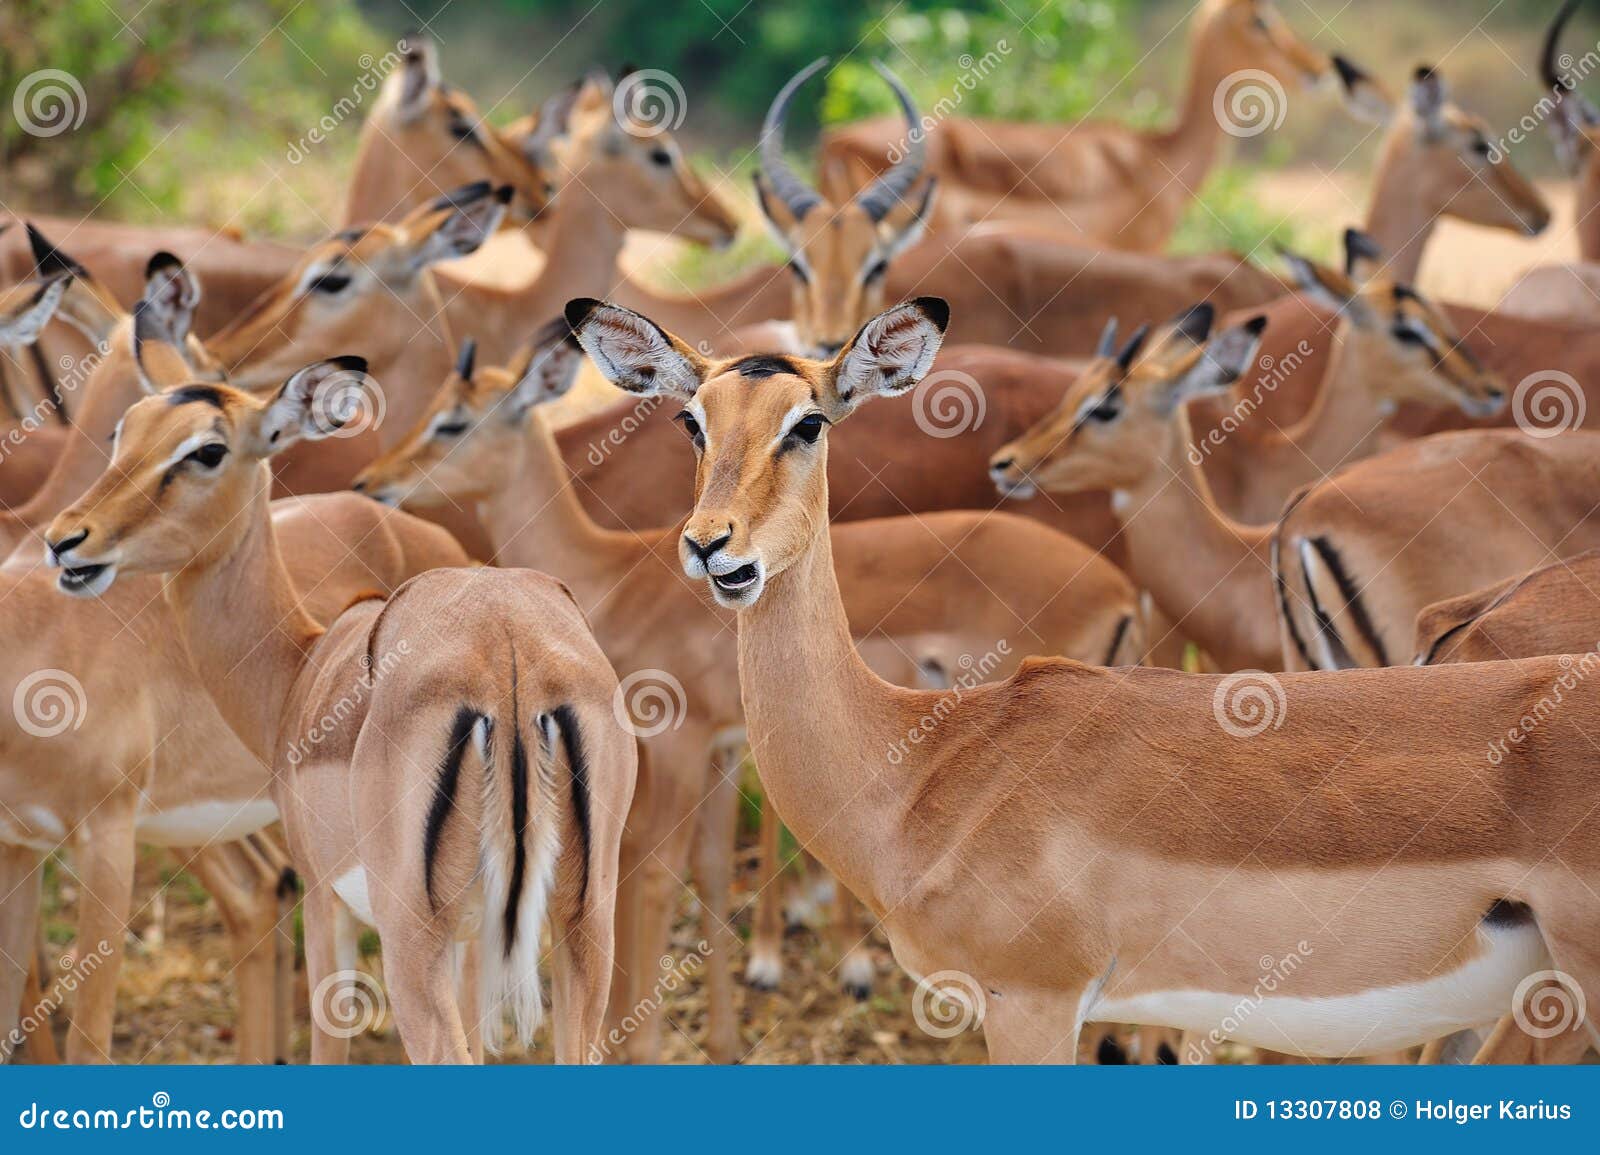 herd of impalas (aepyceros melampus)